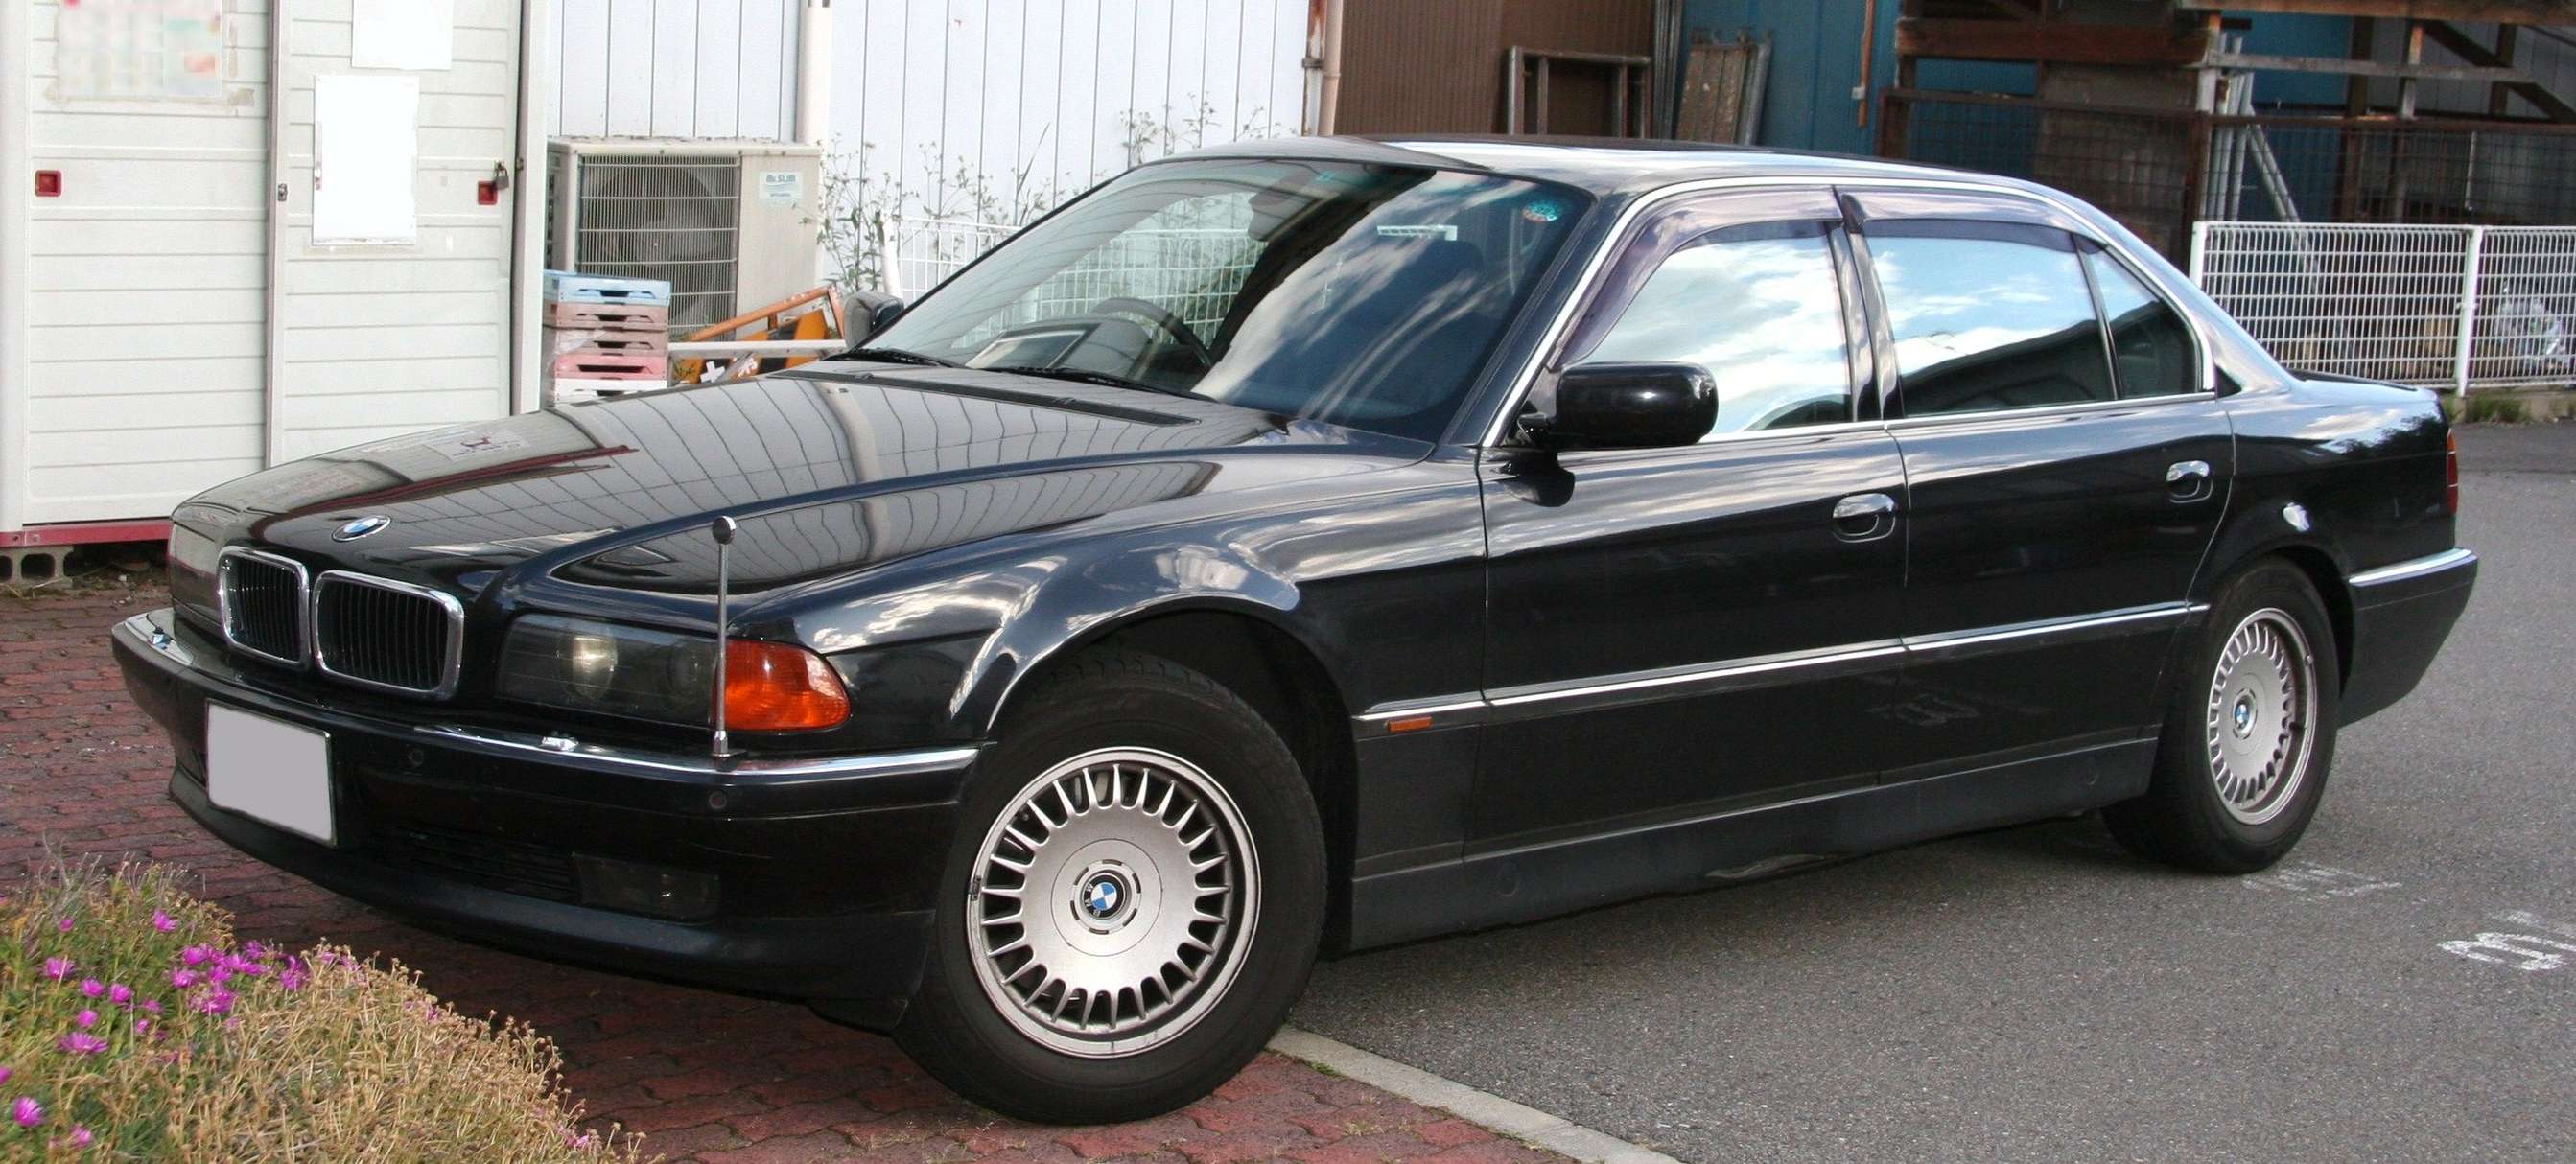 BMW_750iL